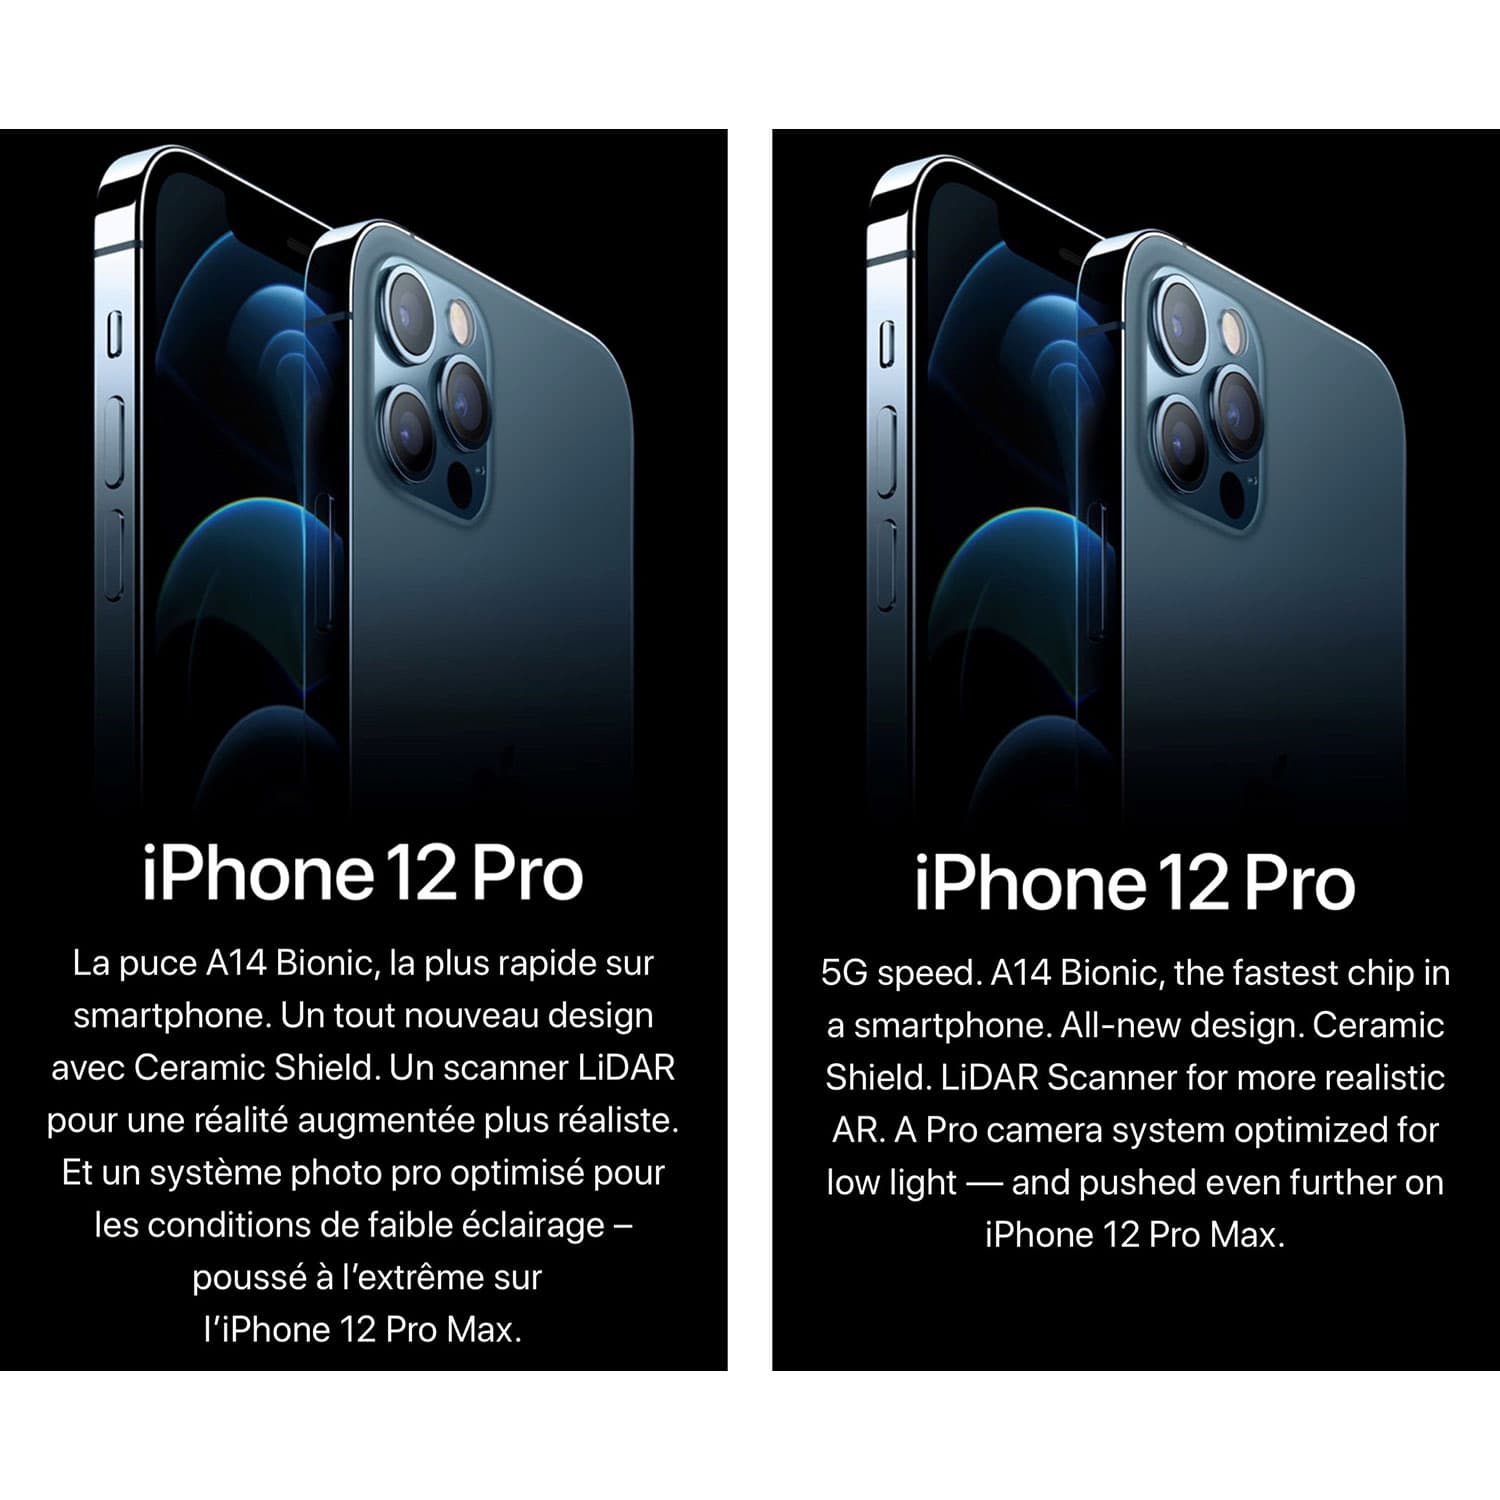 Apple dévoile l'iPhone 12 et l'iPhone 12 mini : une nouvelle ère pour les  iPhone avec la 5G - Apple (FR)